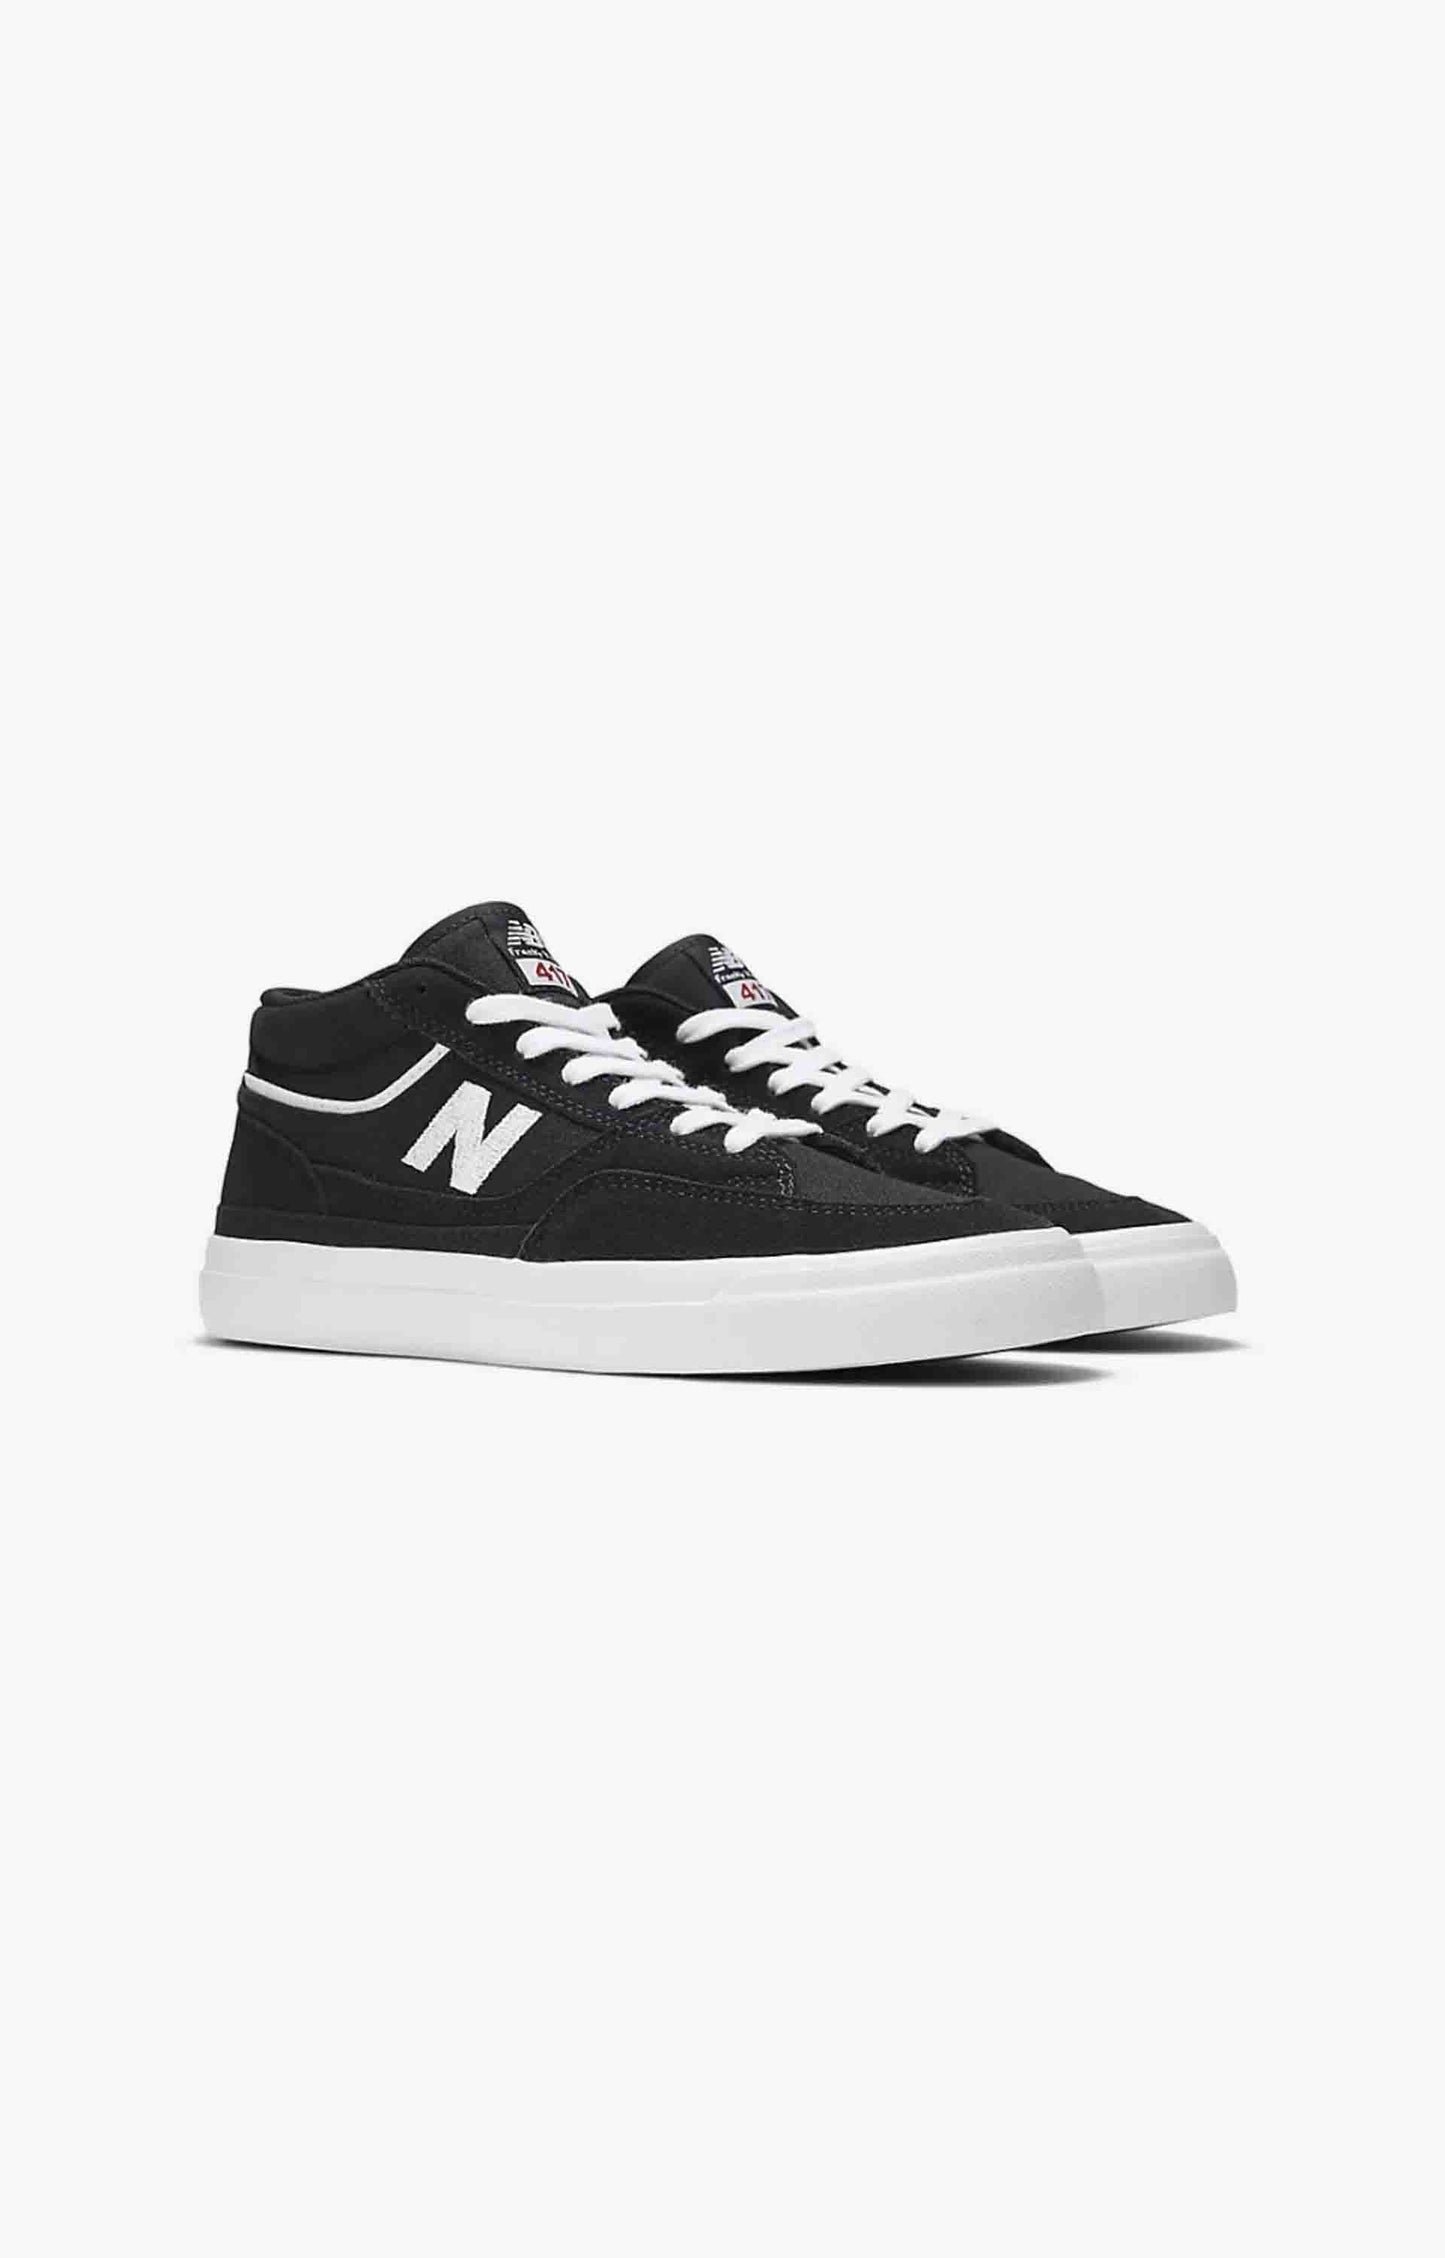 New Balance Numeric NM417ODS Franky Villani Shoe, Black/White